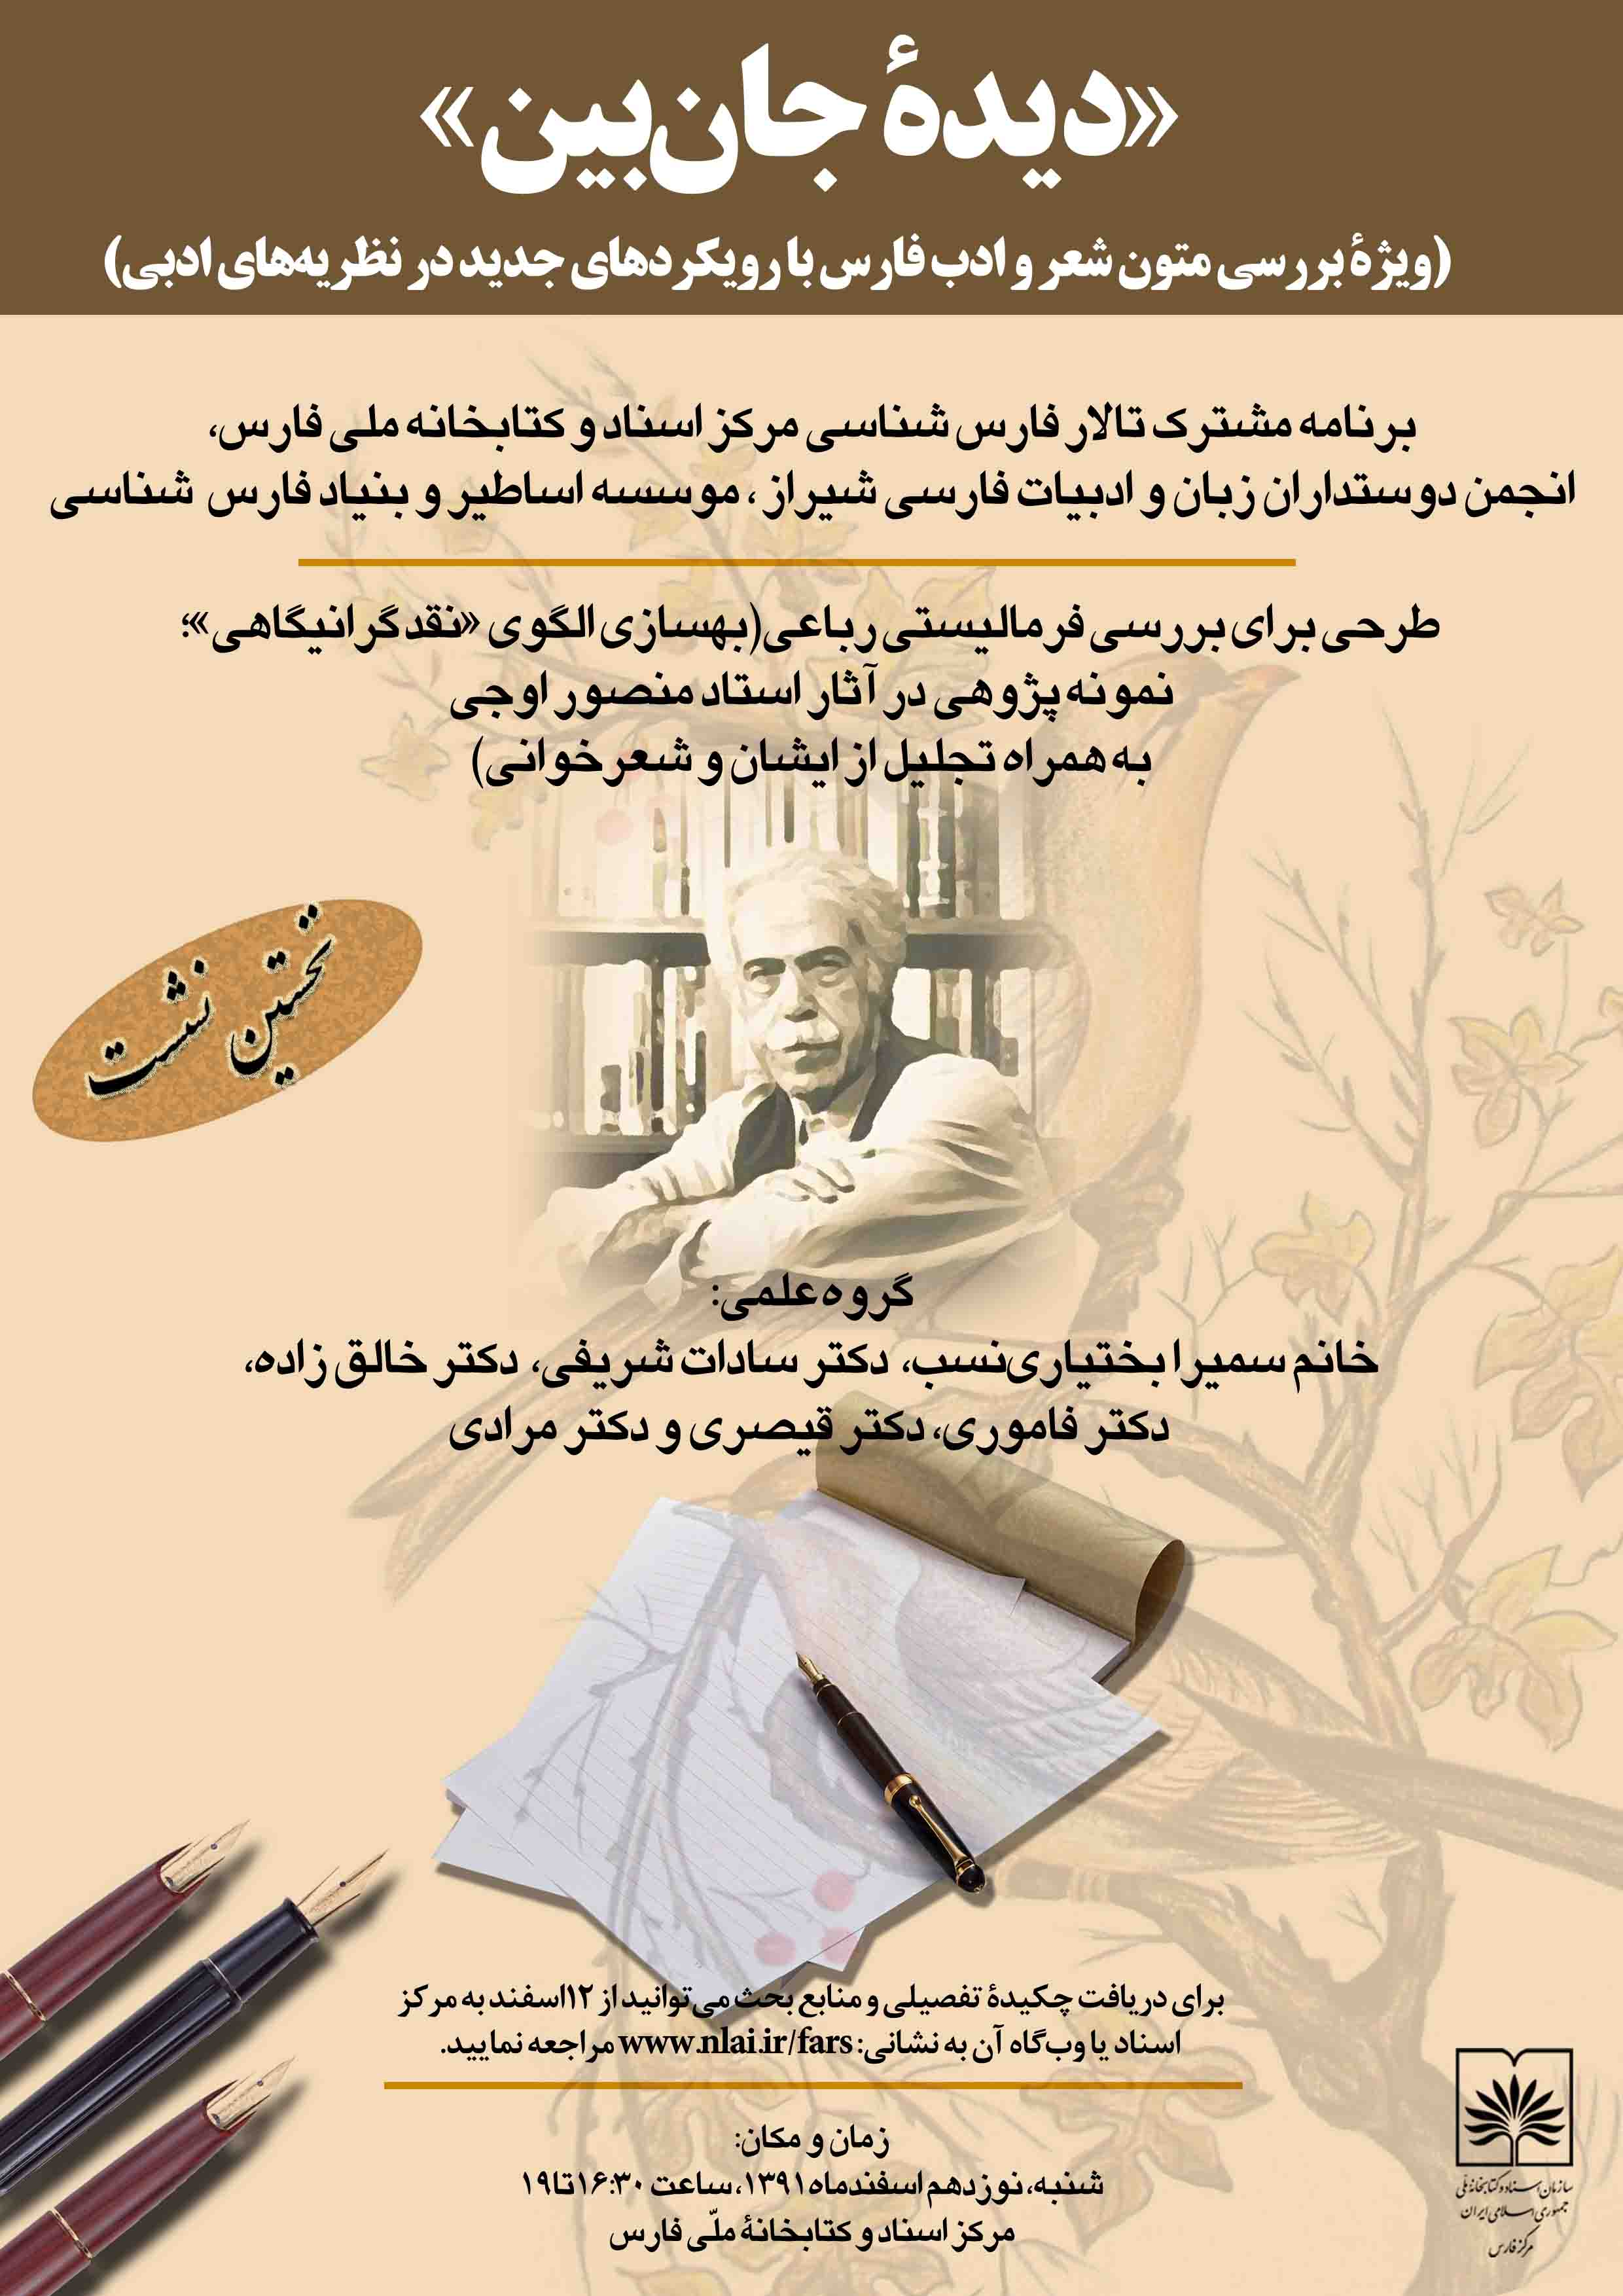 نخستین برنامه علمی - فرهنگی تالار فارس شناسی مرکز اسناد و کتابخانه ملی فارس برگزار گردید.